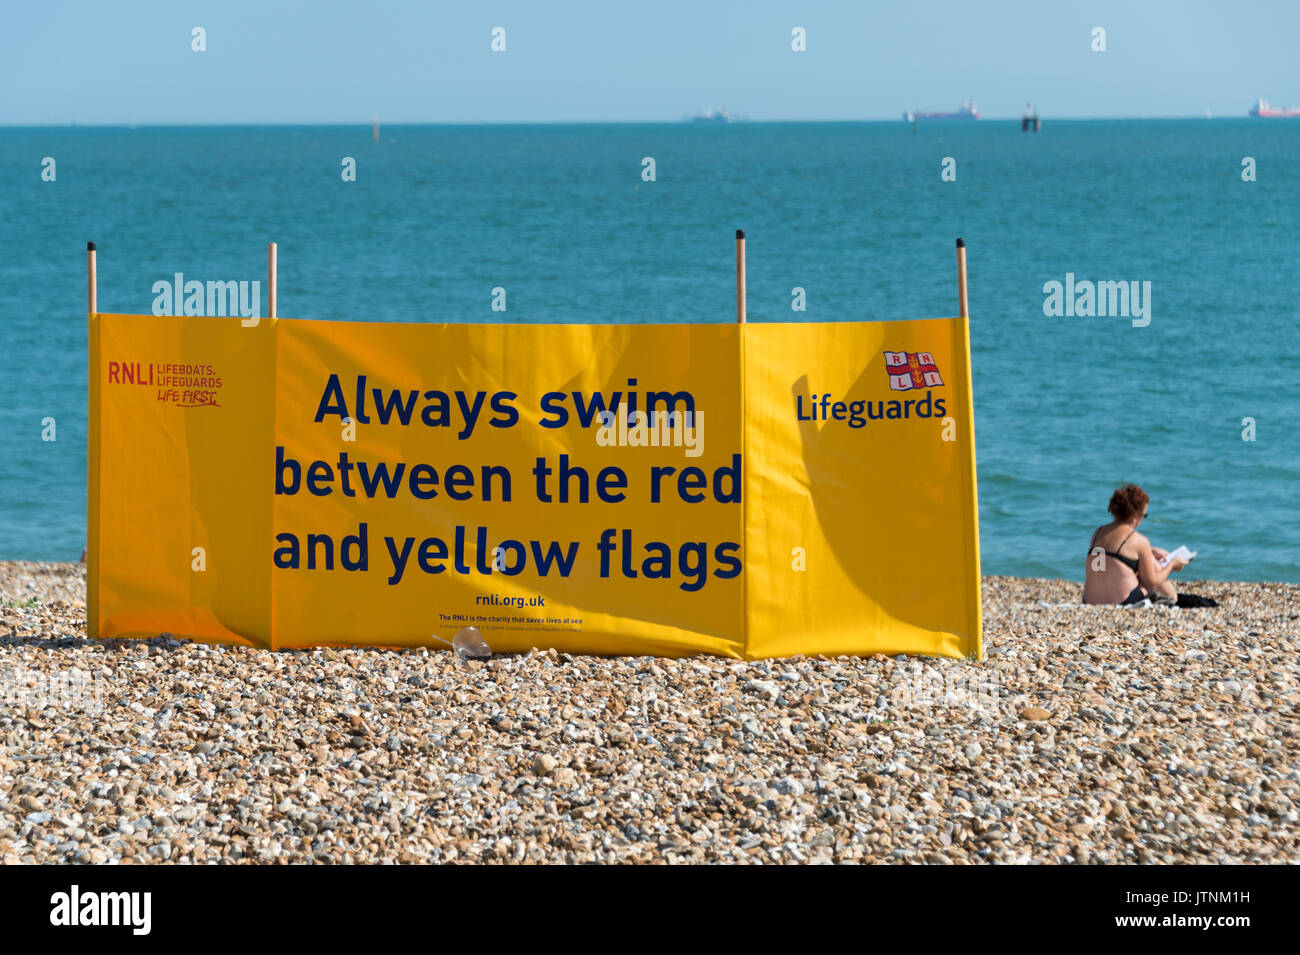 RNLI Rettungsschwimmer Windschutz anmelden Southsea Strand in Hampshire. Schwimmen betweeneo rot-gelben Flaggen. Stockfoto